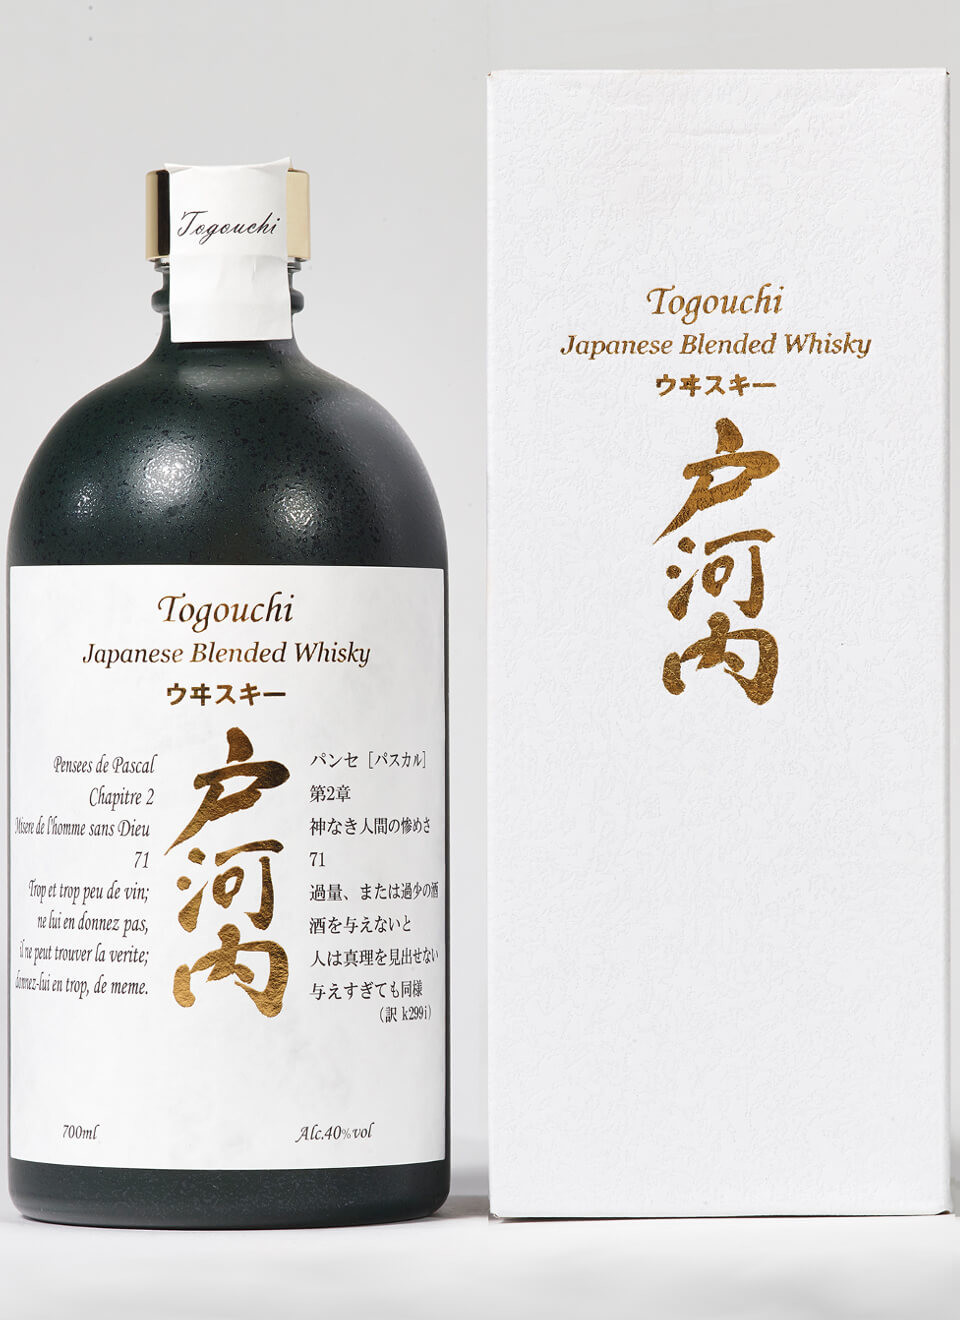 Whisky Japonais Togouchi Premium 70 cl - Achat/Vente de Whisky Japonais